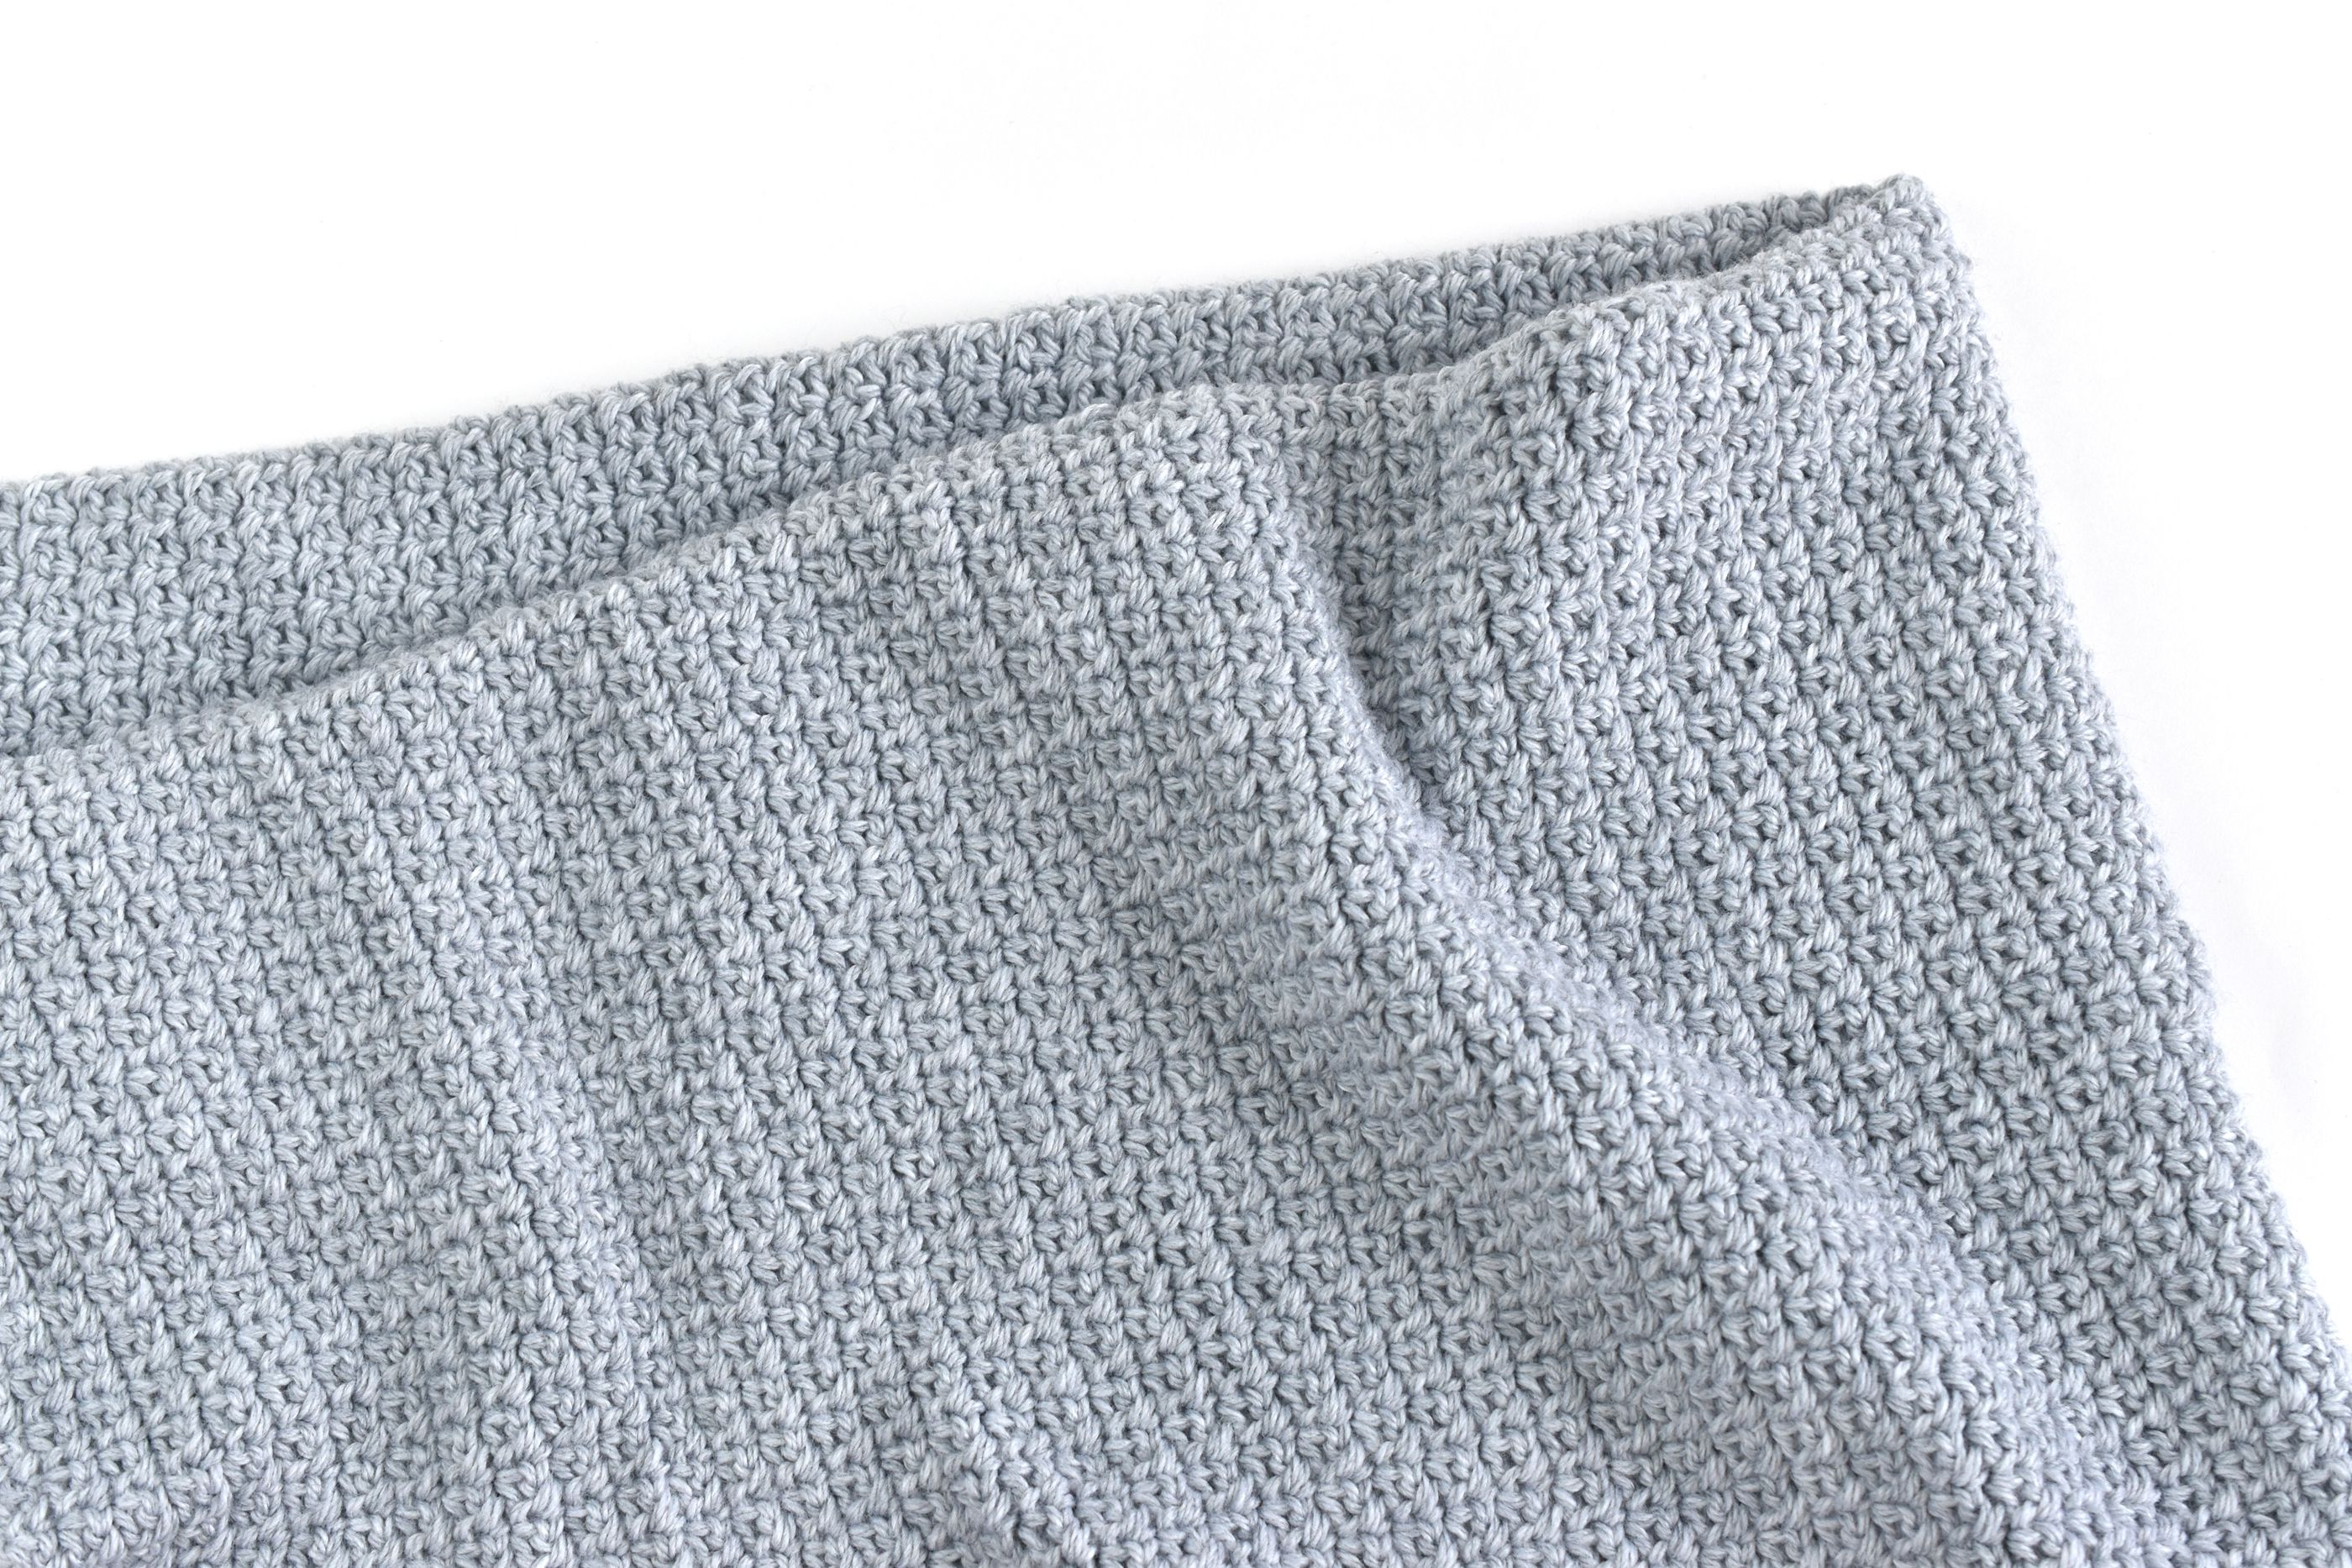 Knitted Baby Blanket Pattern Free Fast Free Easy Crochet Ba Blanket Pattern